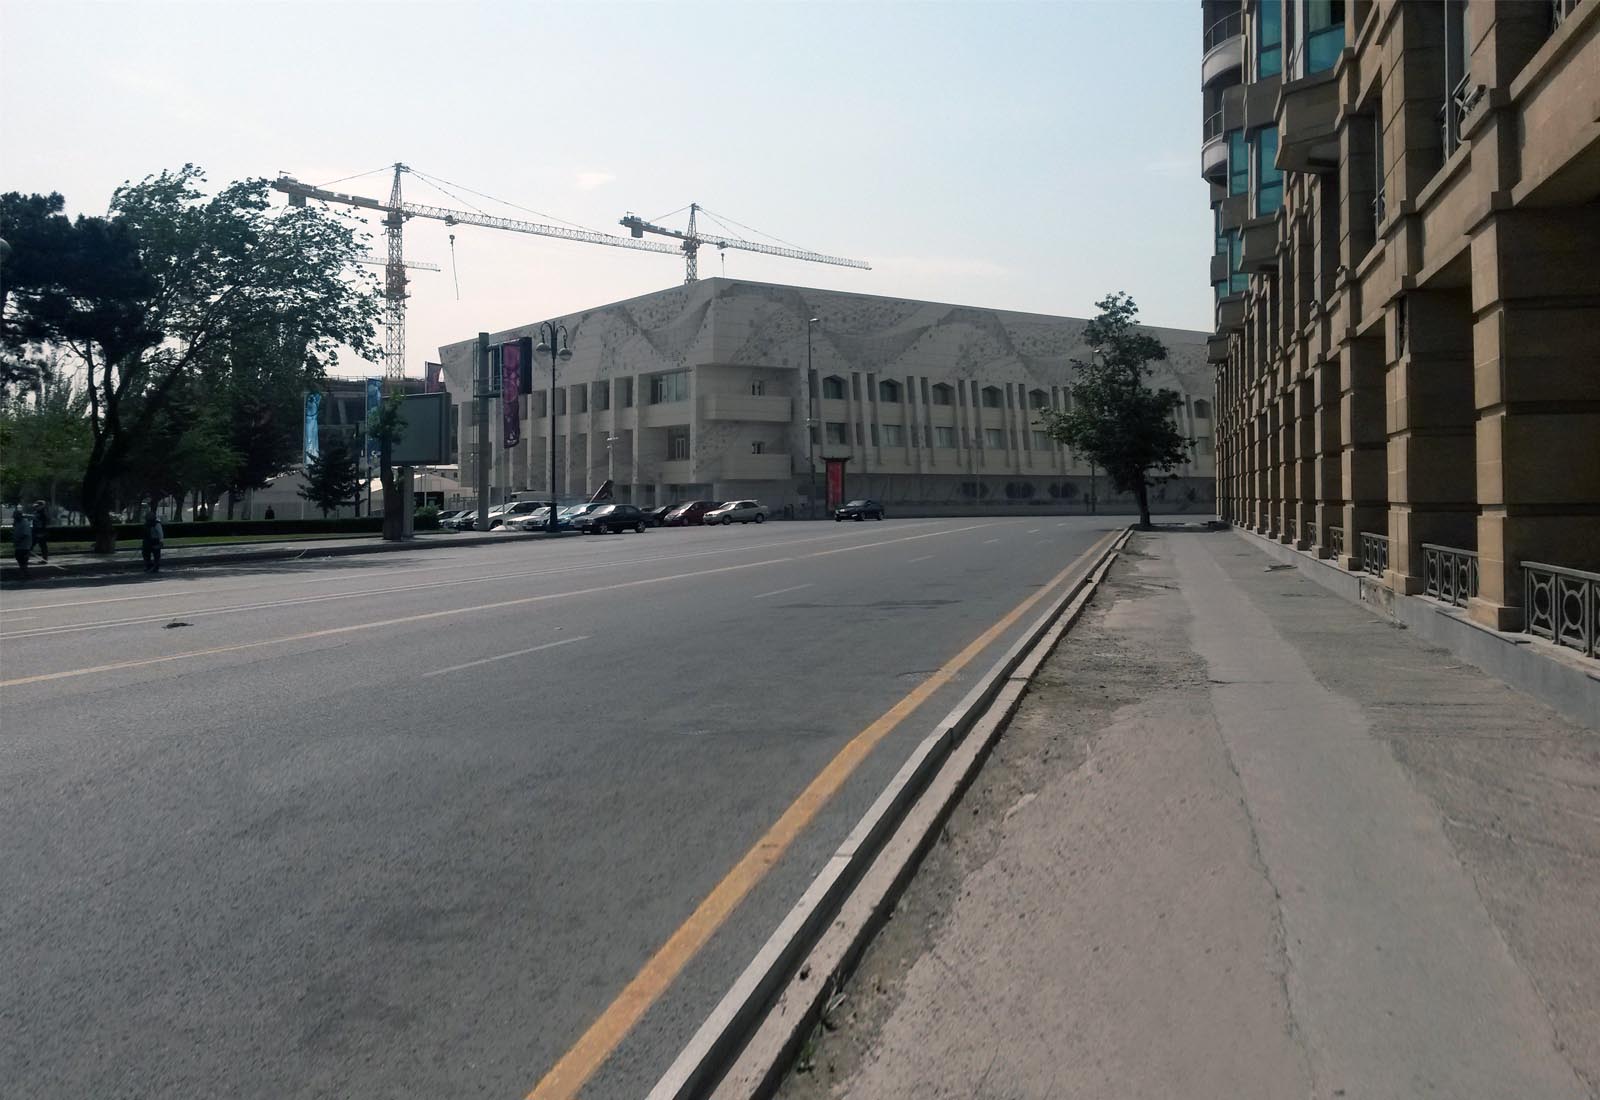 Baku sport hall - Vista dell'ingresso all'edificio